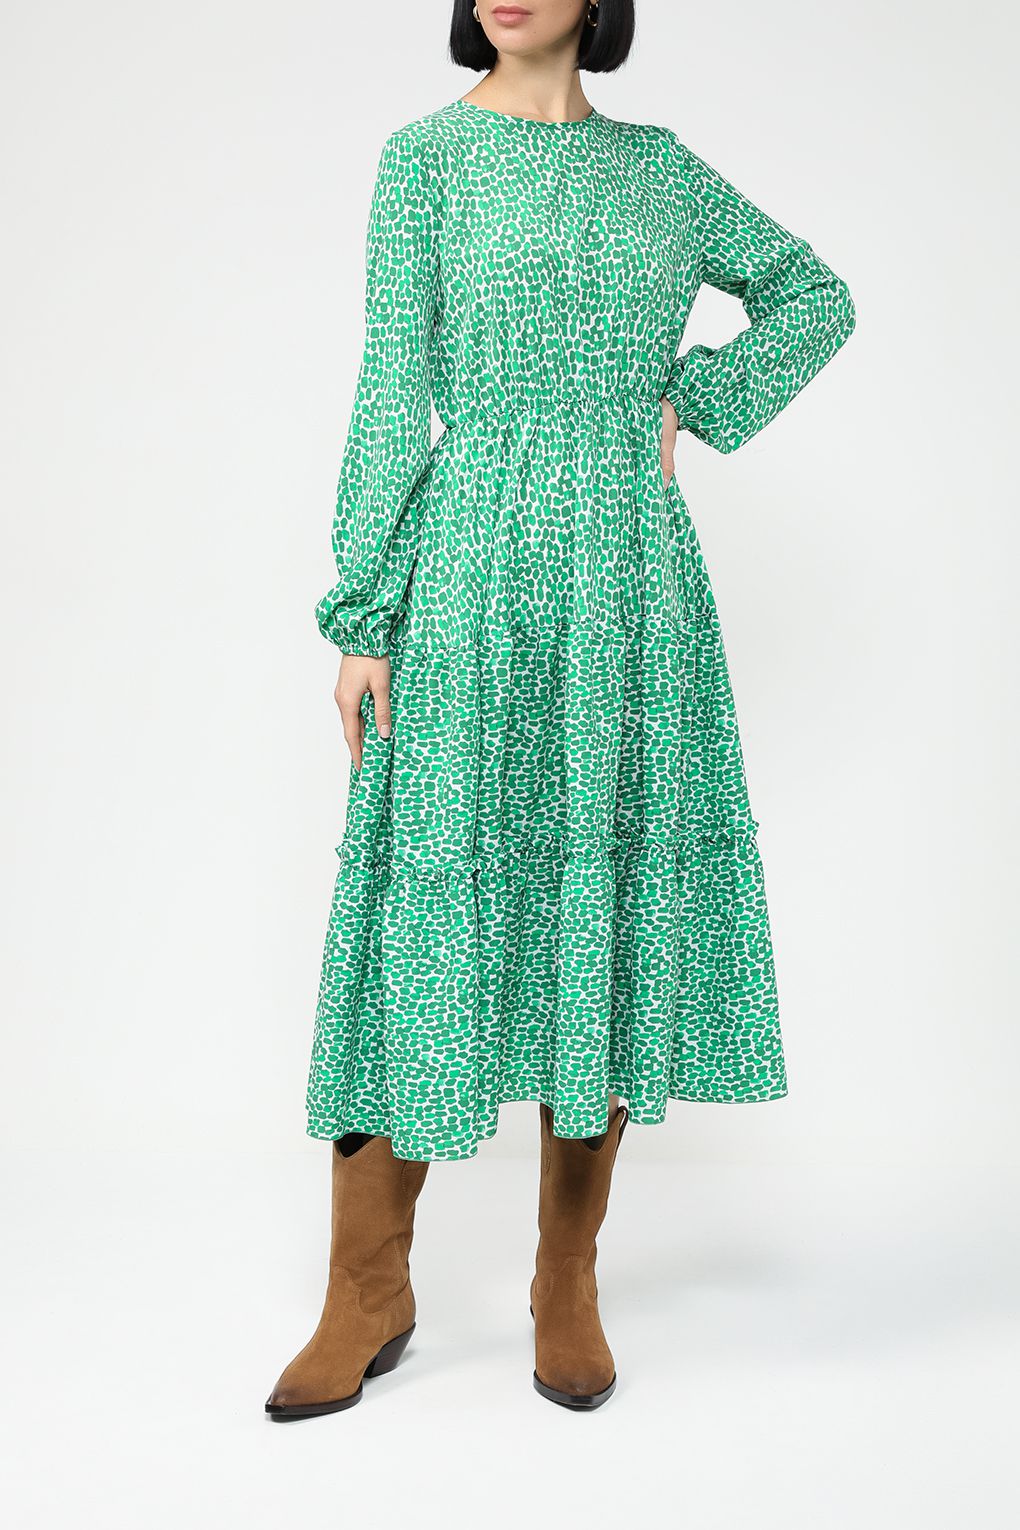 Платье женское BELUCCI BL23075366-004 зеленый зеленое S